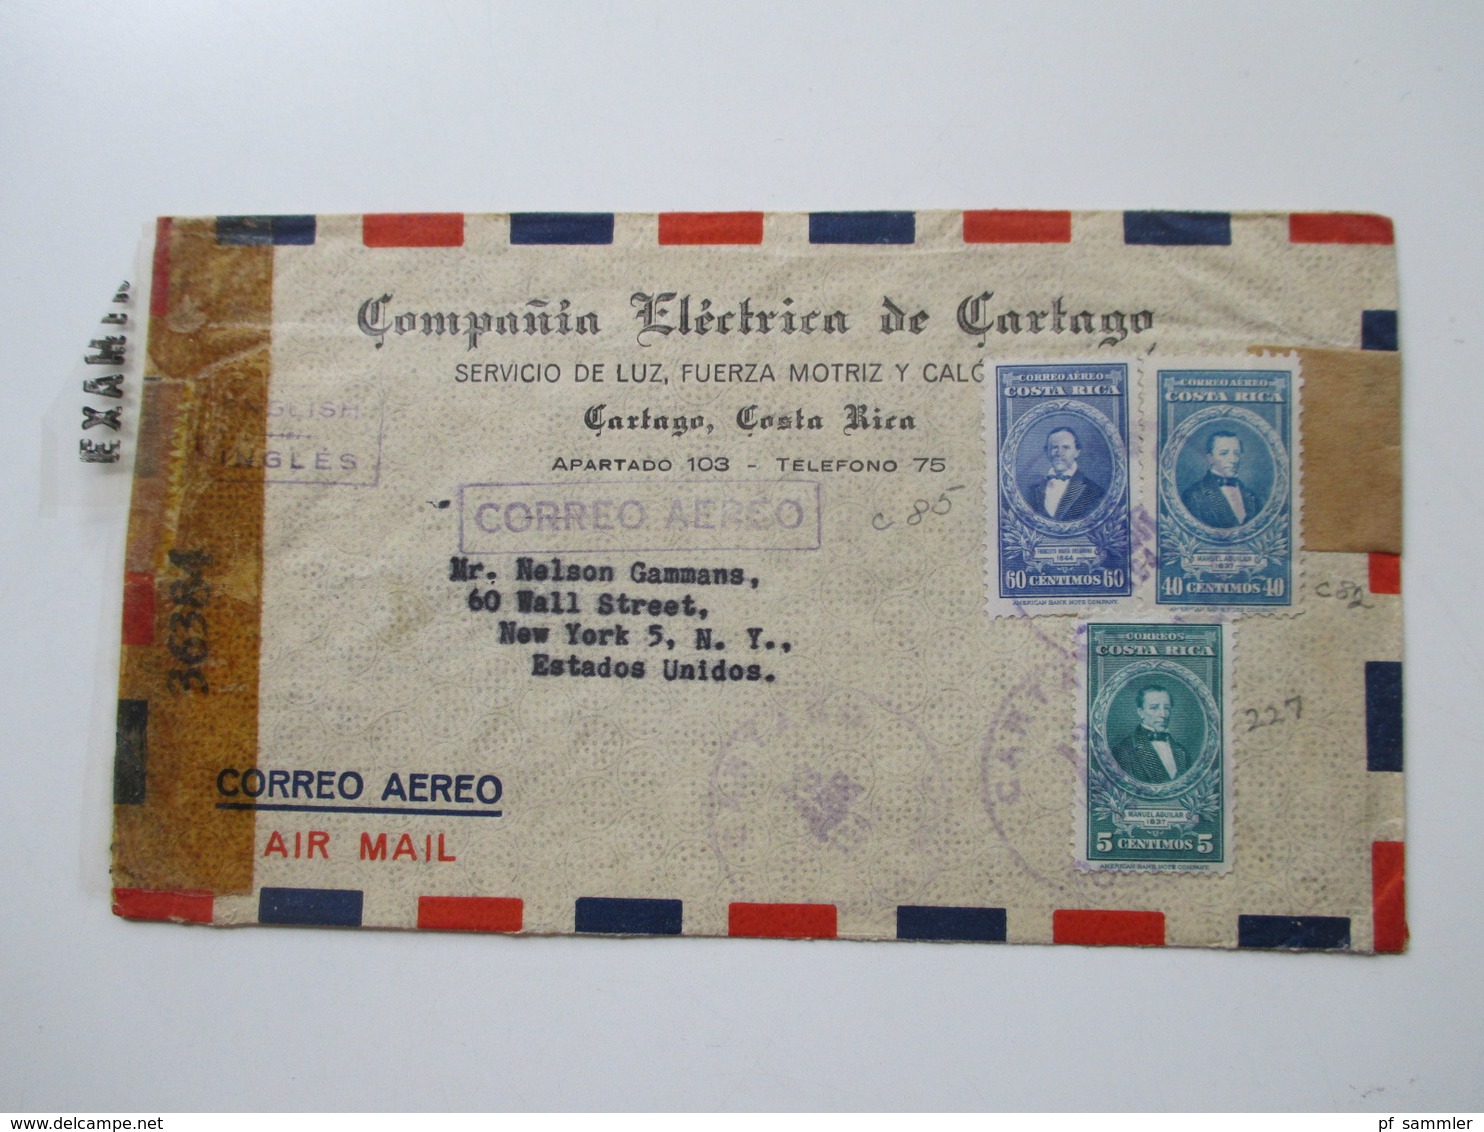 Belegeposten ca. 1942 - 44 Zensurpost mit 38 Briefen Südamerika - USA verschiedene Länder! Examined by... / Censorship